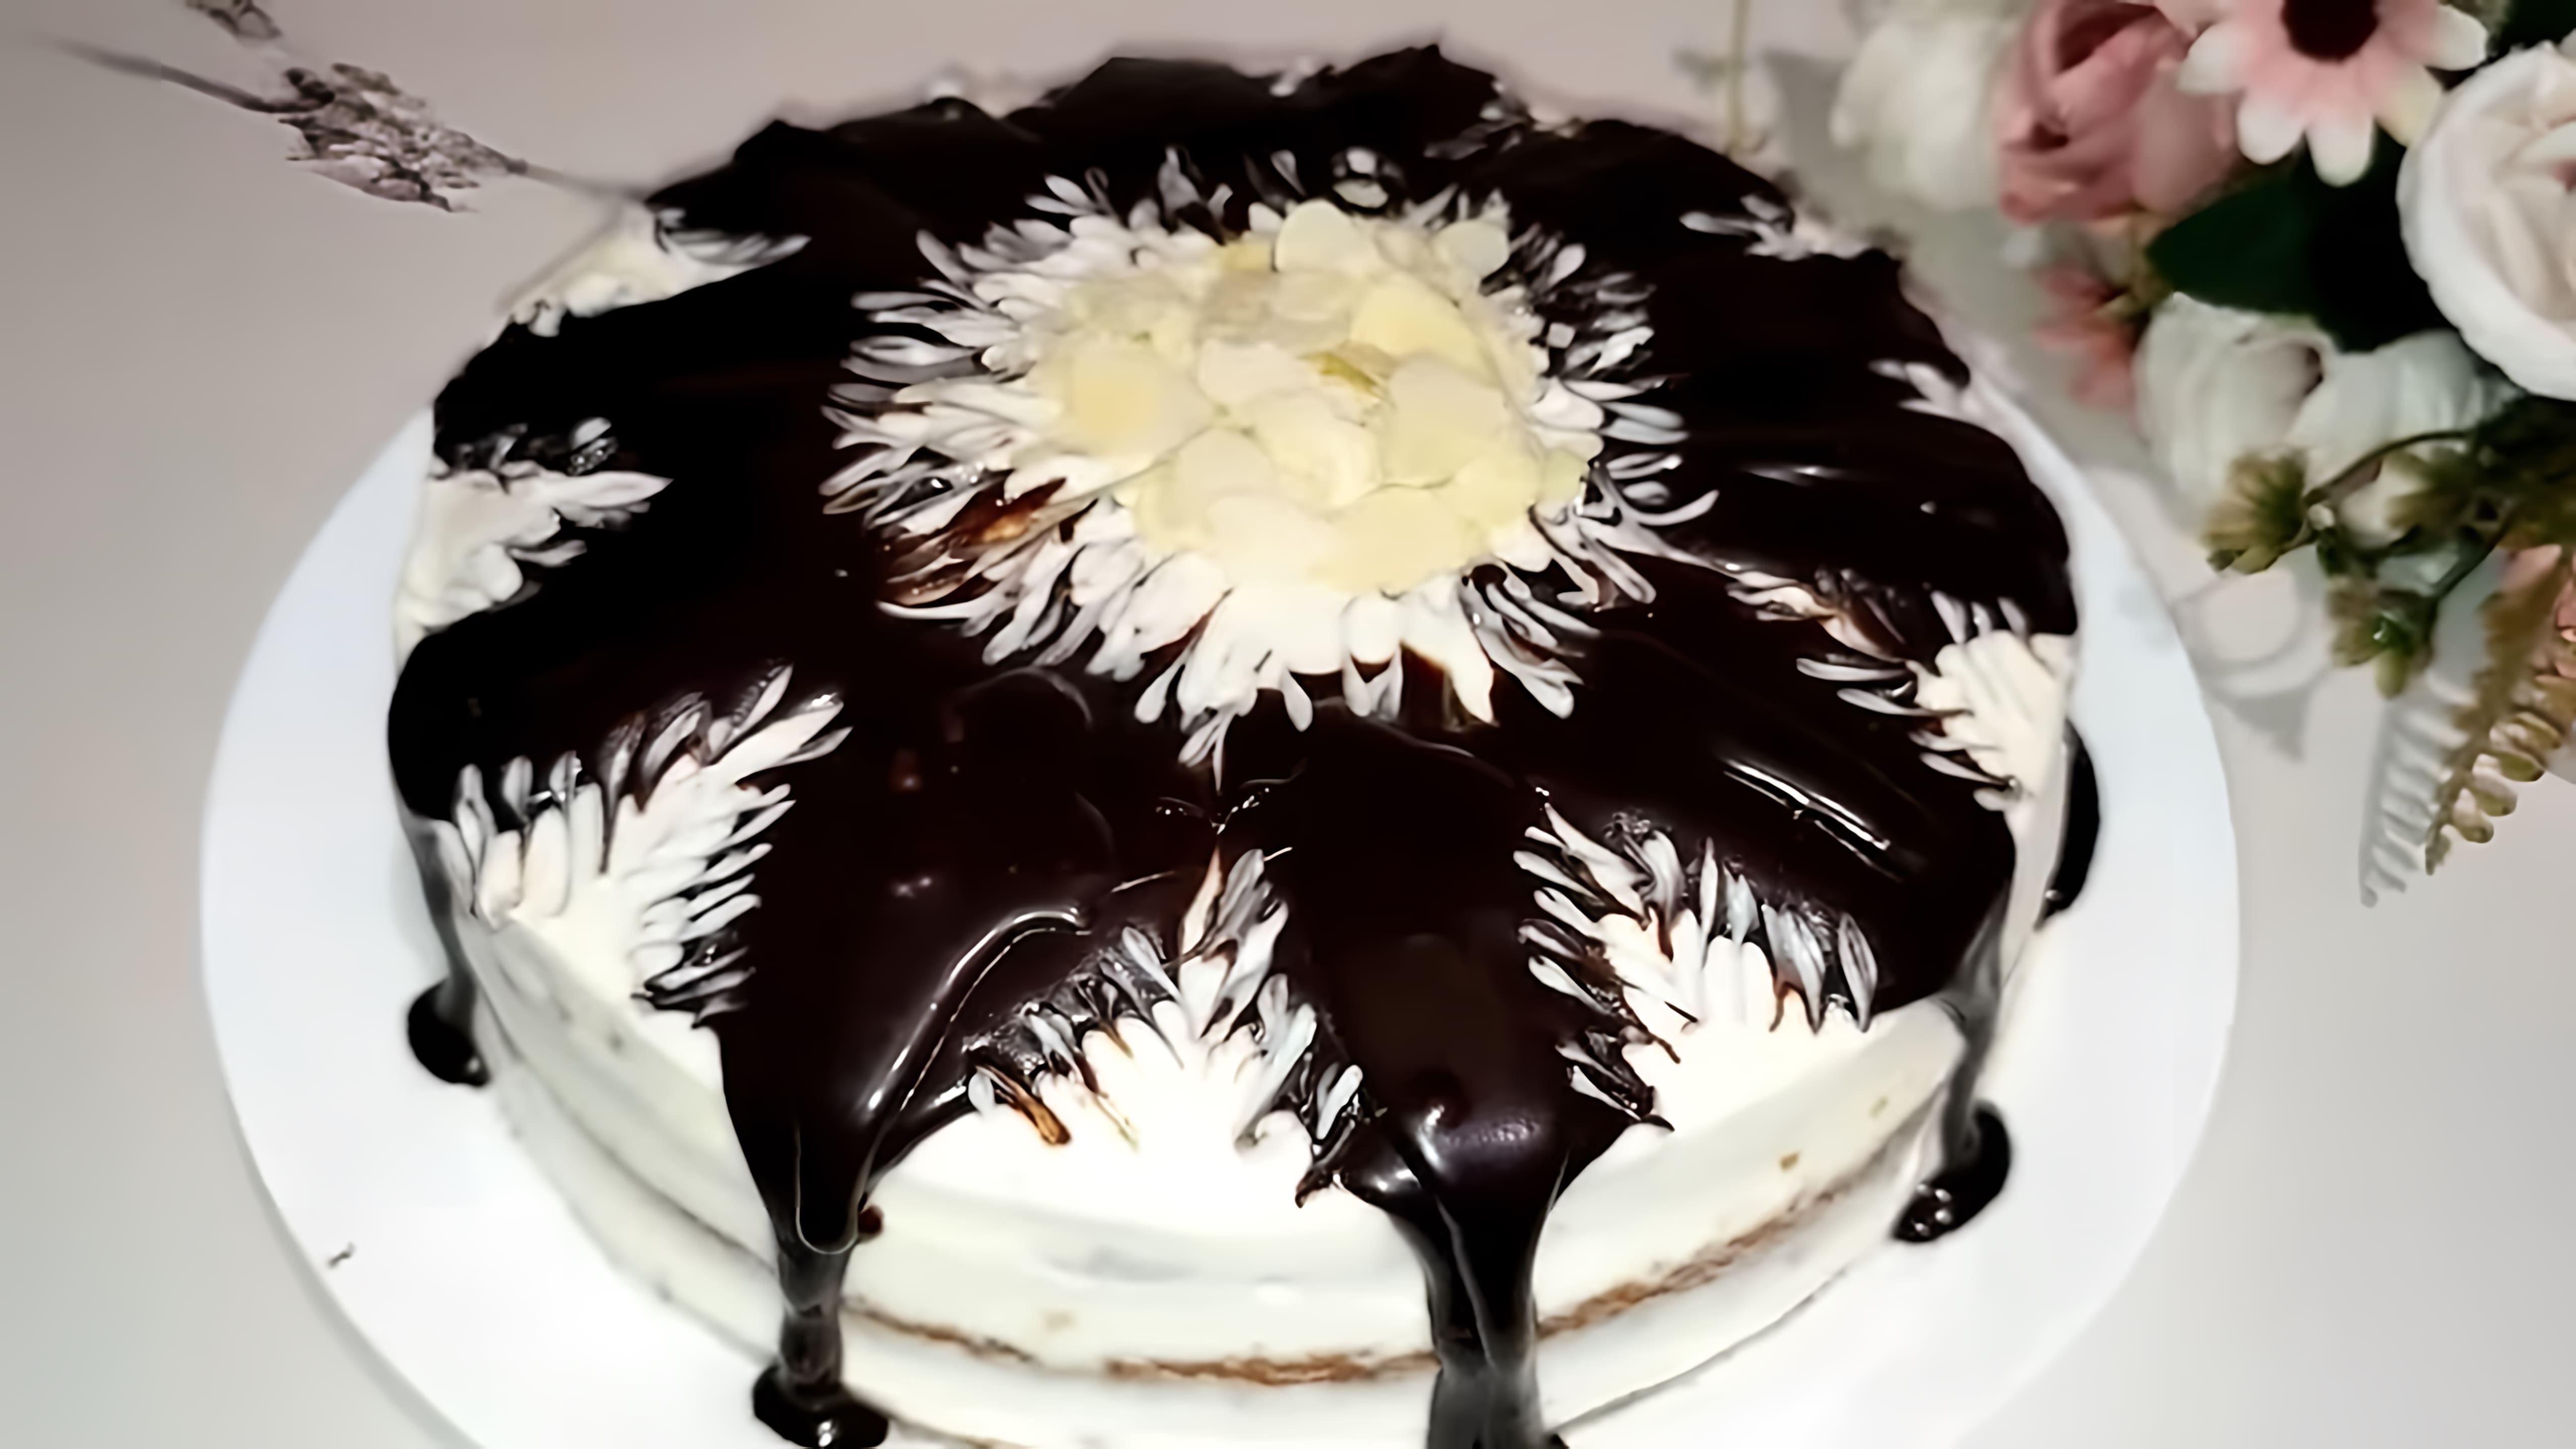 В этом видео демонстрируется рецепт приготовления торта "Маша" за 20 минут